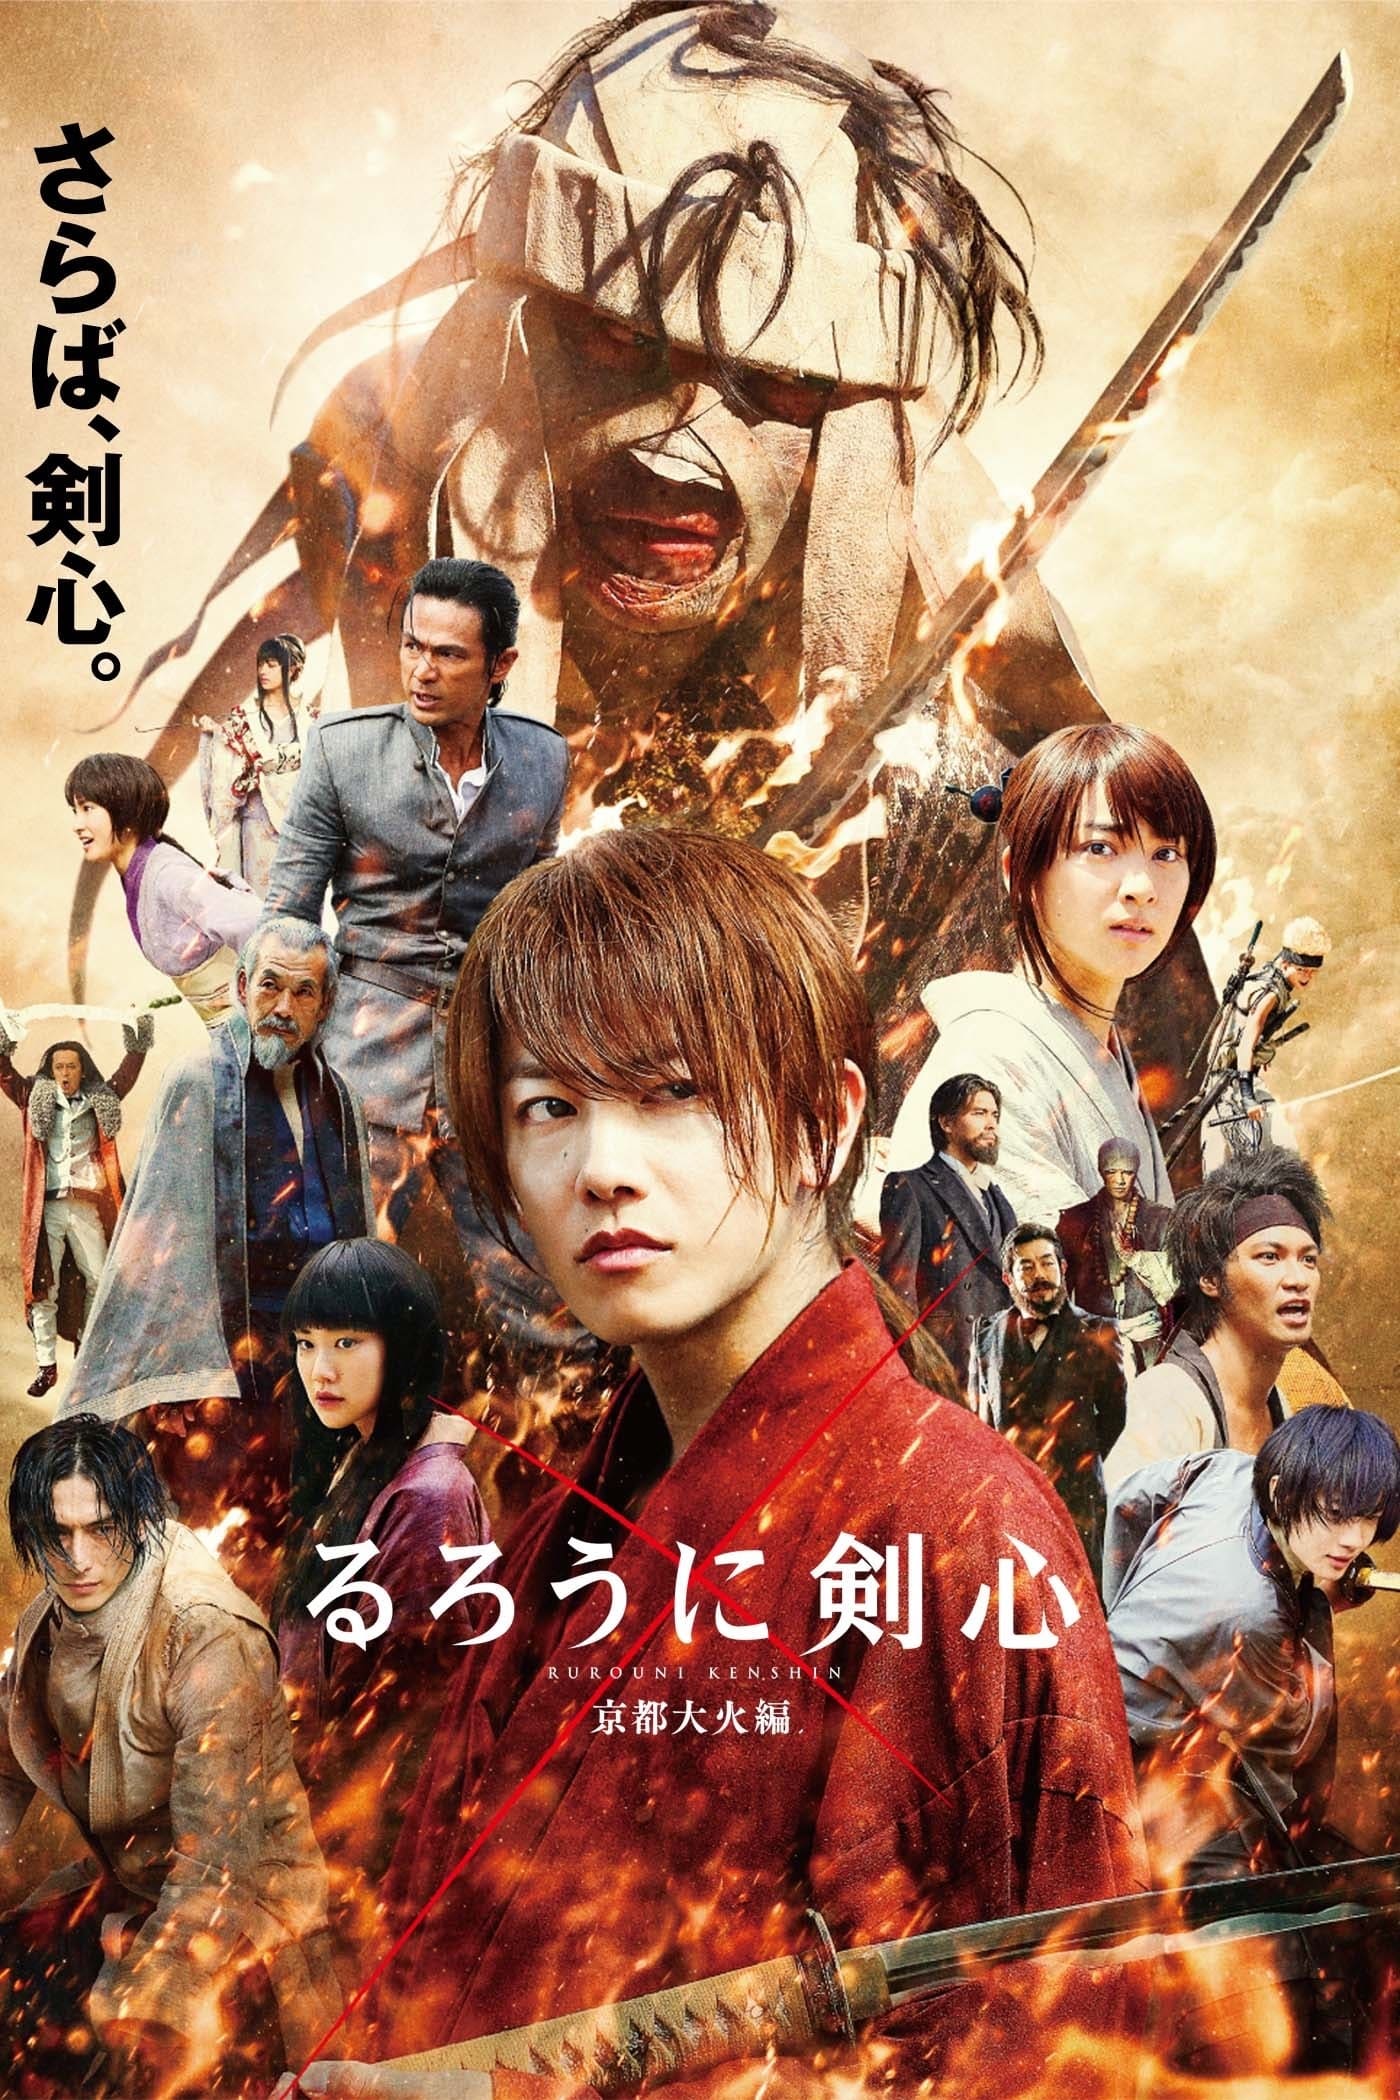 Lãng Khách Kenshin 2: Đại Hỏa Kyoto (Rurouni Kenshin Part II: Kyoto Inferno) [2014]